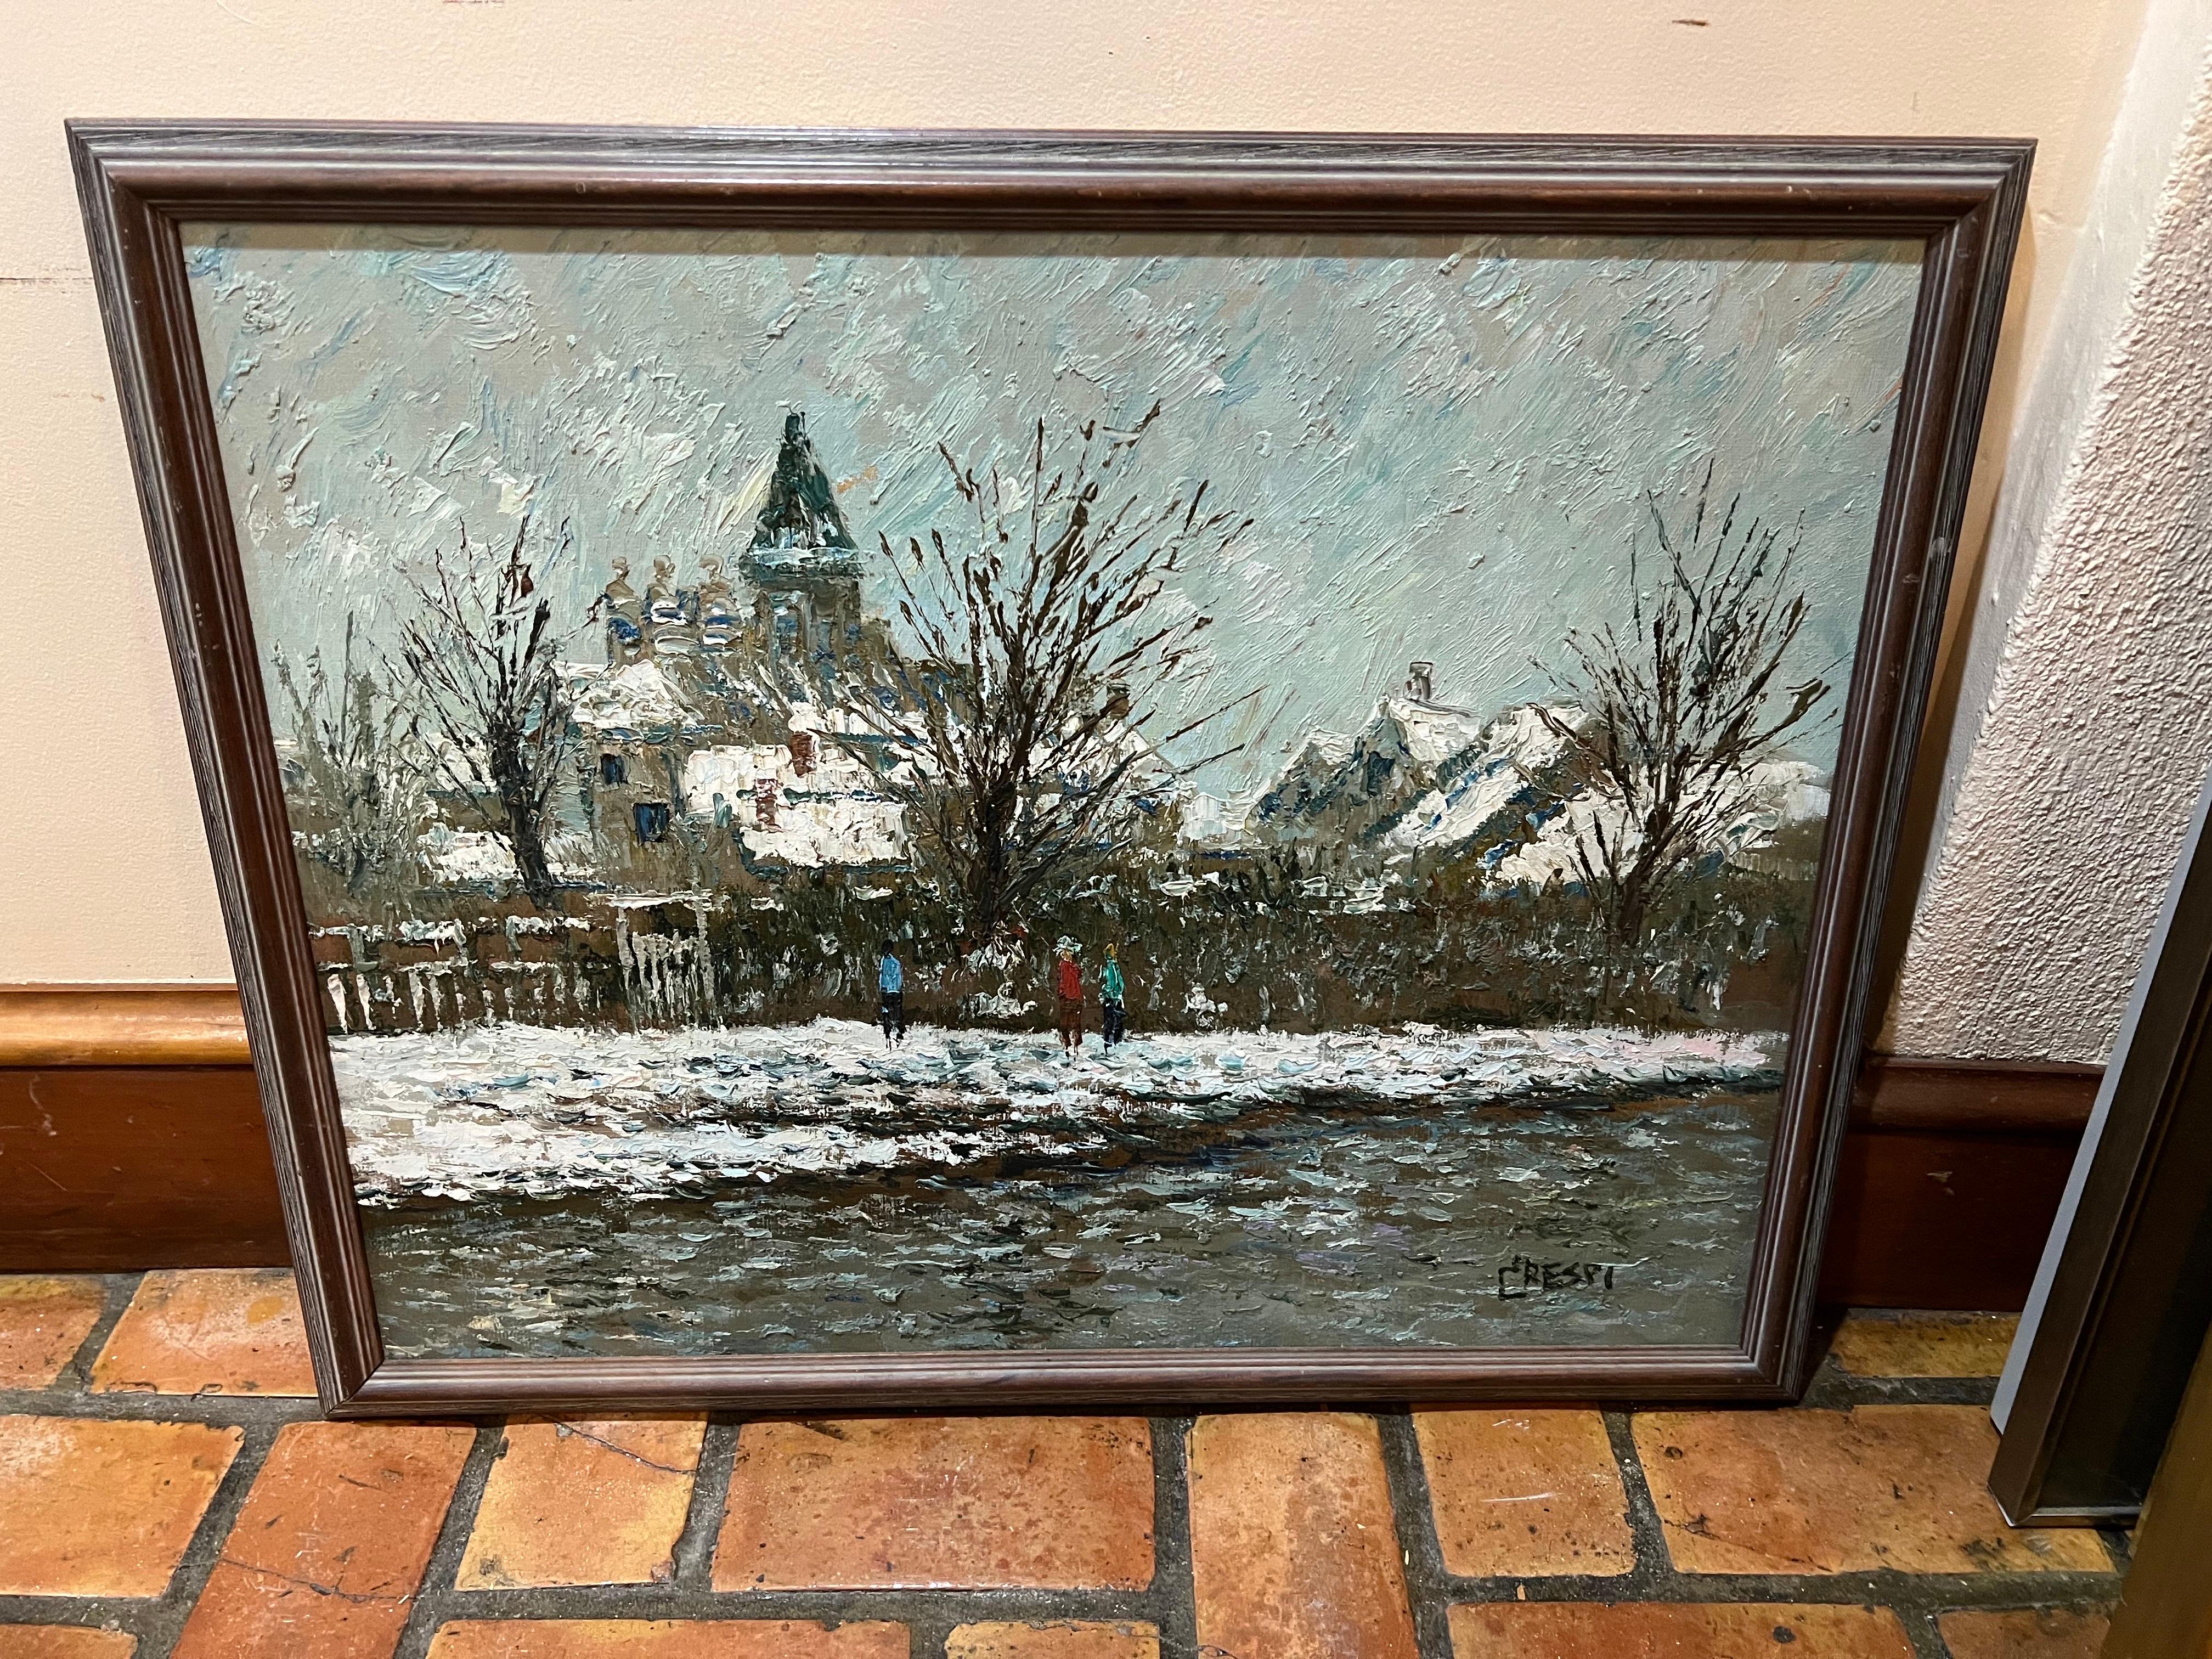 Impasto scène d'hiver huile sur toile de l'Artiste Américain David Crespi (1928-1992)
Impasto lourd d'un village dans la neige. Technique du couteau à palette.
